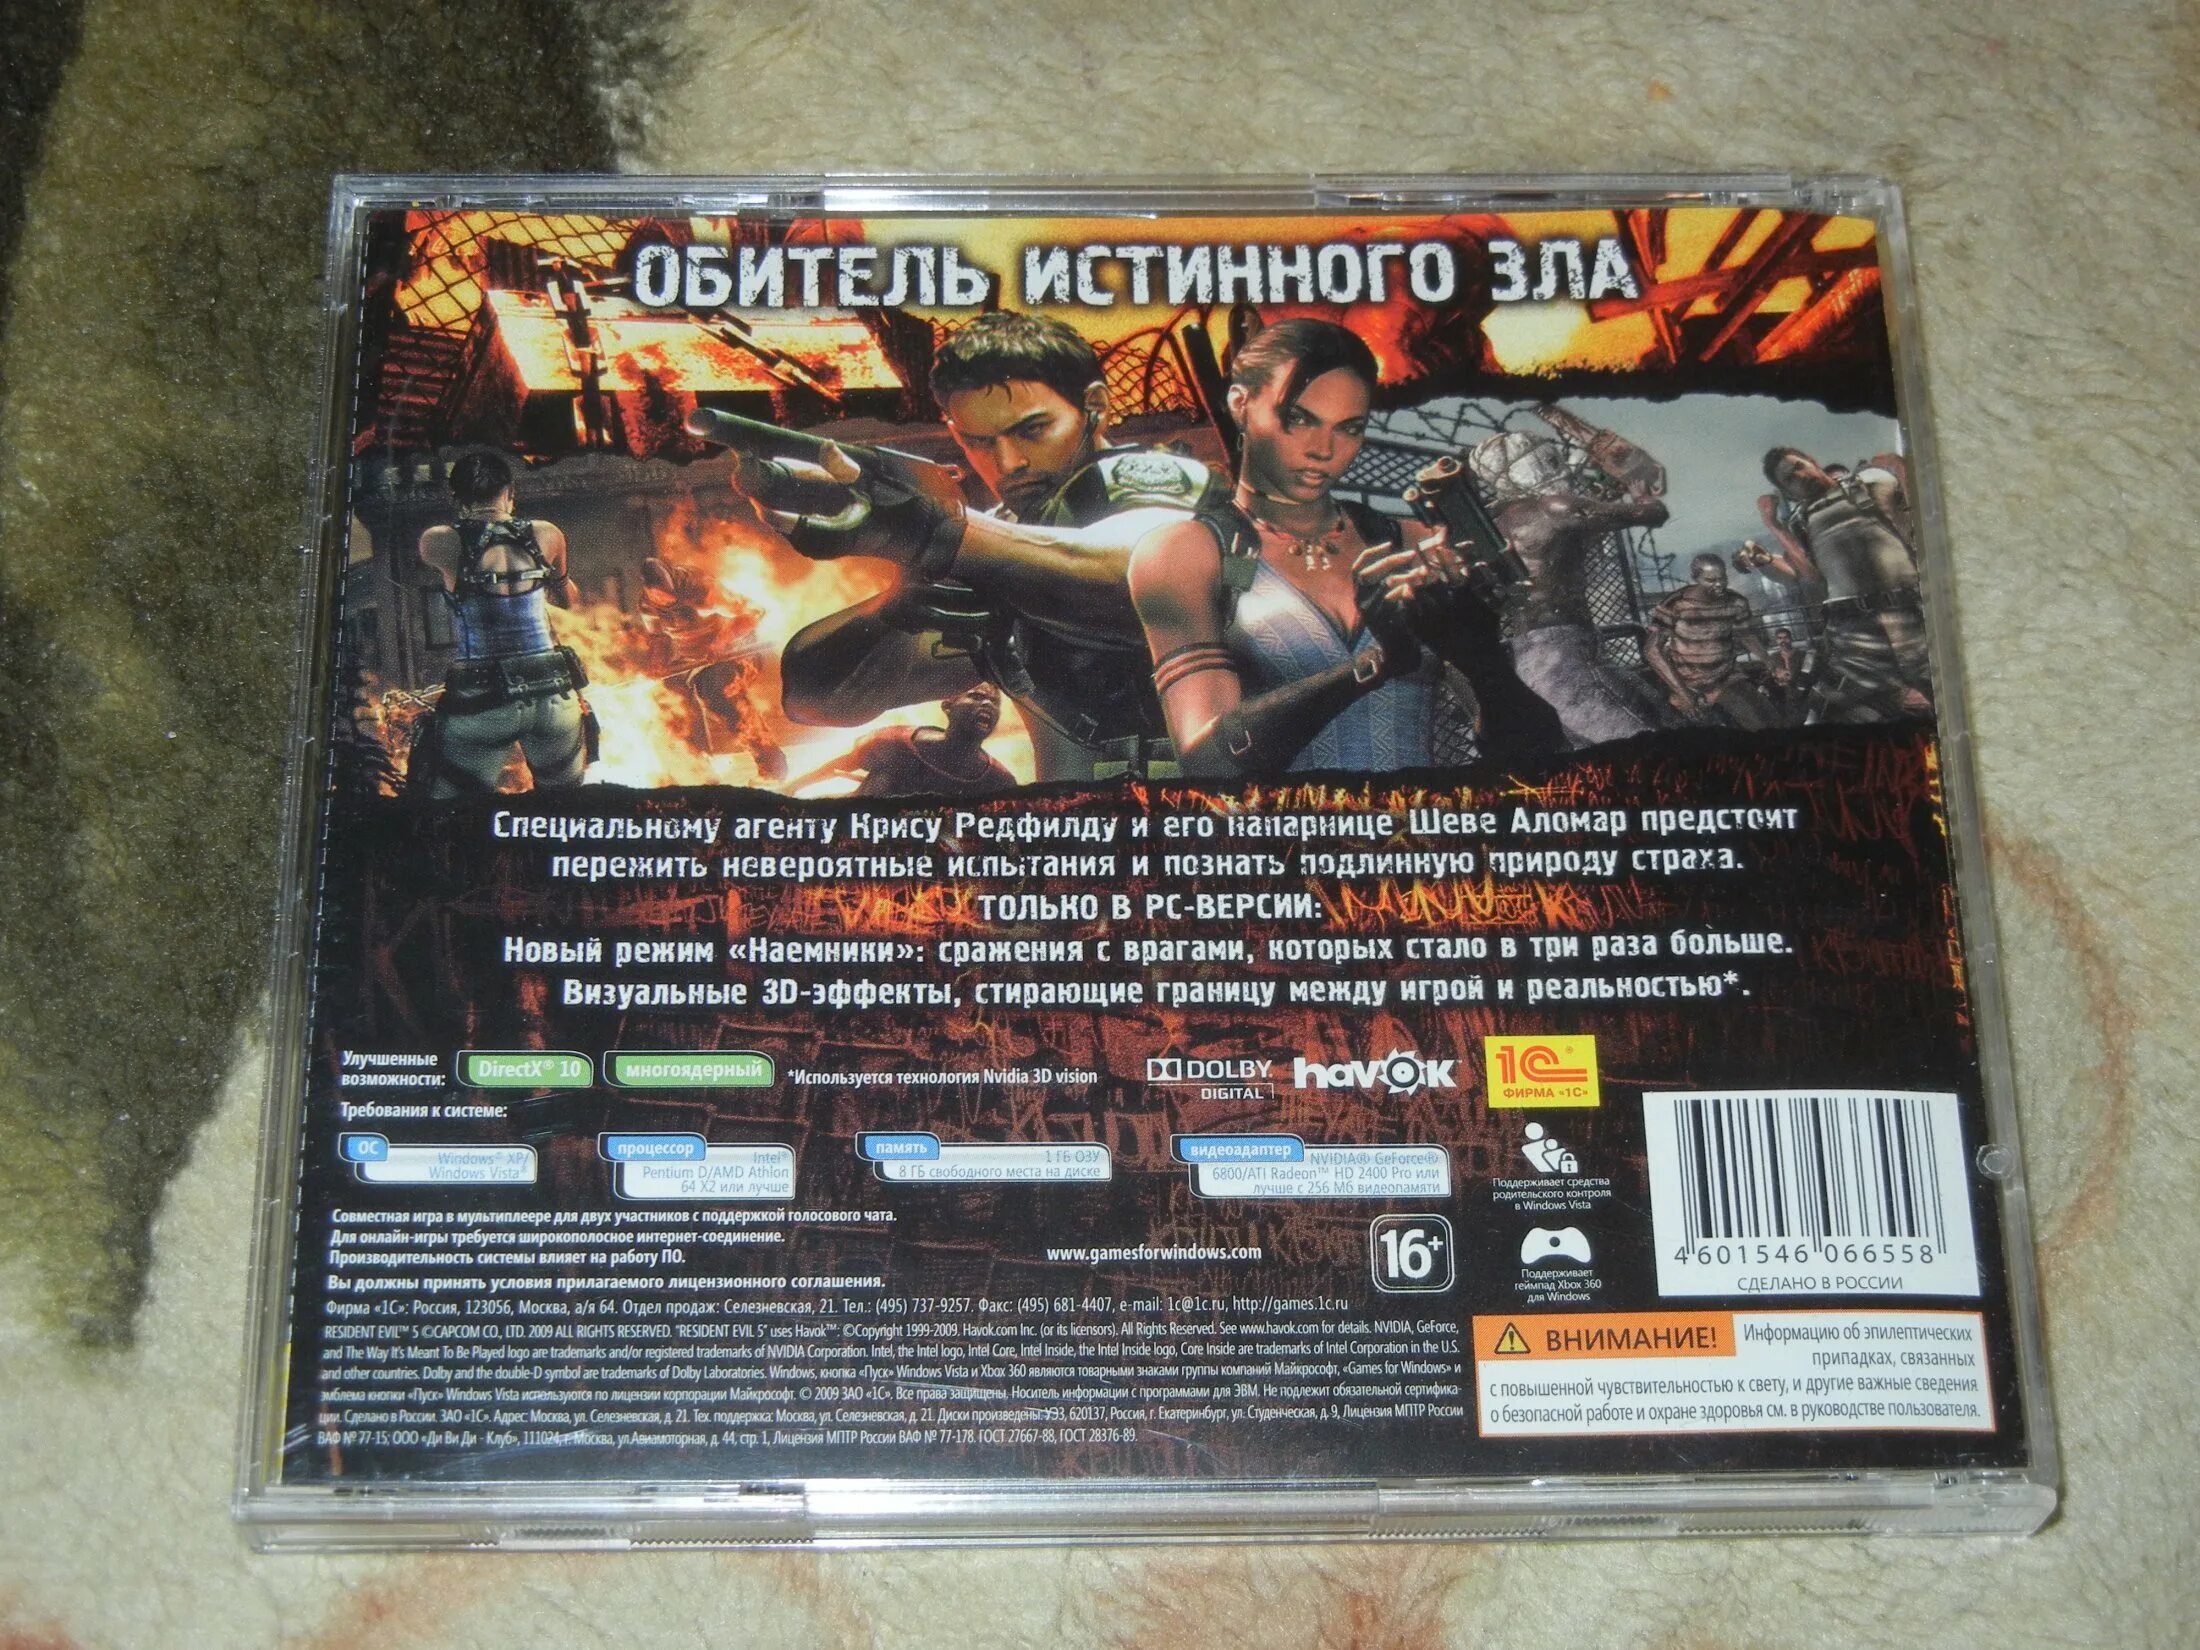 Крософ. Диск игры Resident Evil 5. Диск игра Resident Evil PC Jewel Case. Resident Evil 4 Cover PC [новый диск]. Resident Evil 5 диск PC обложка.